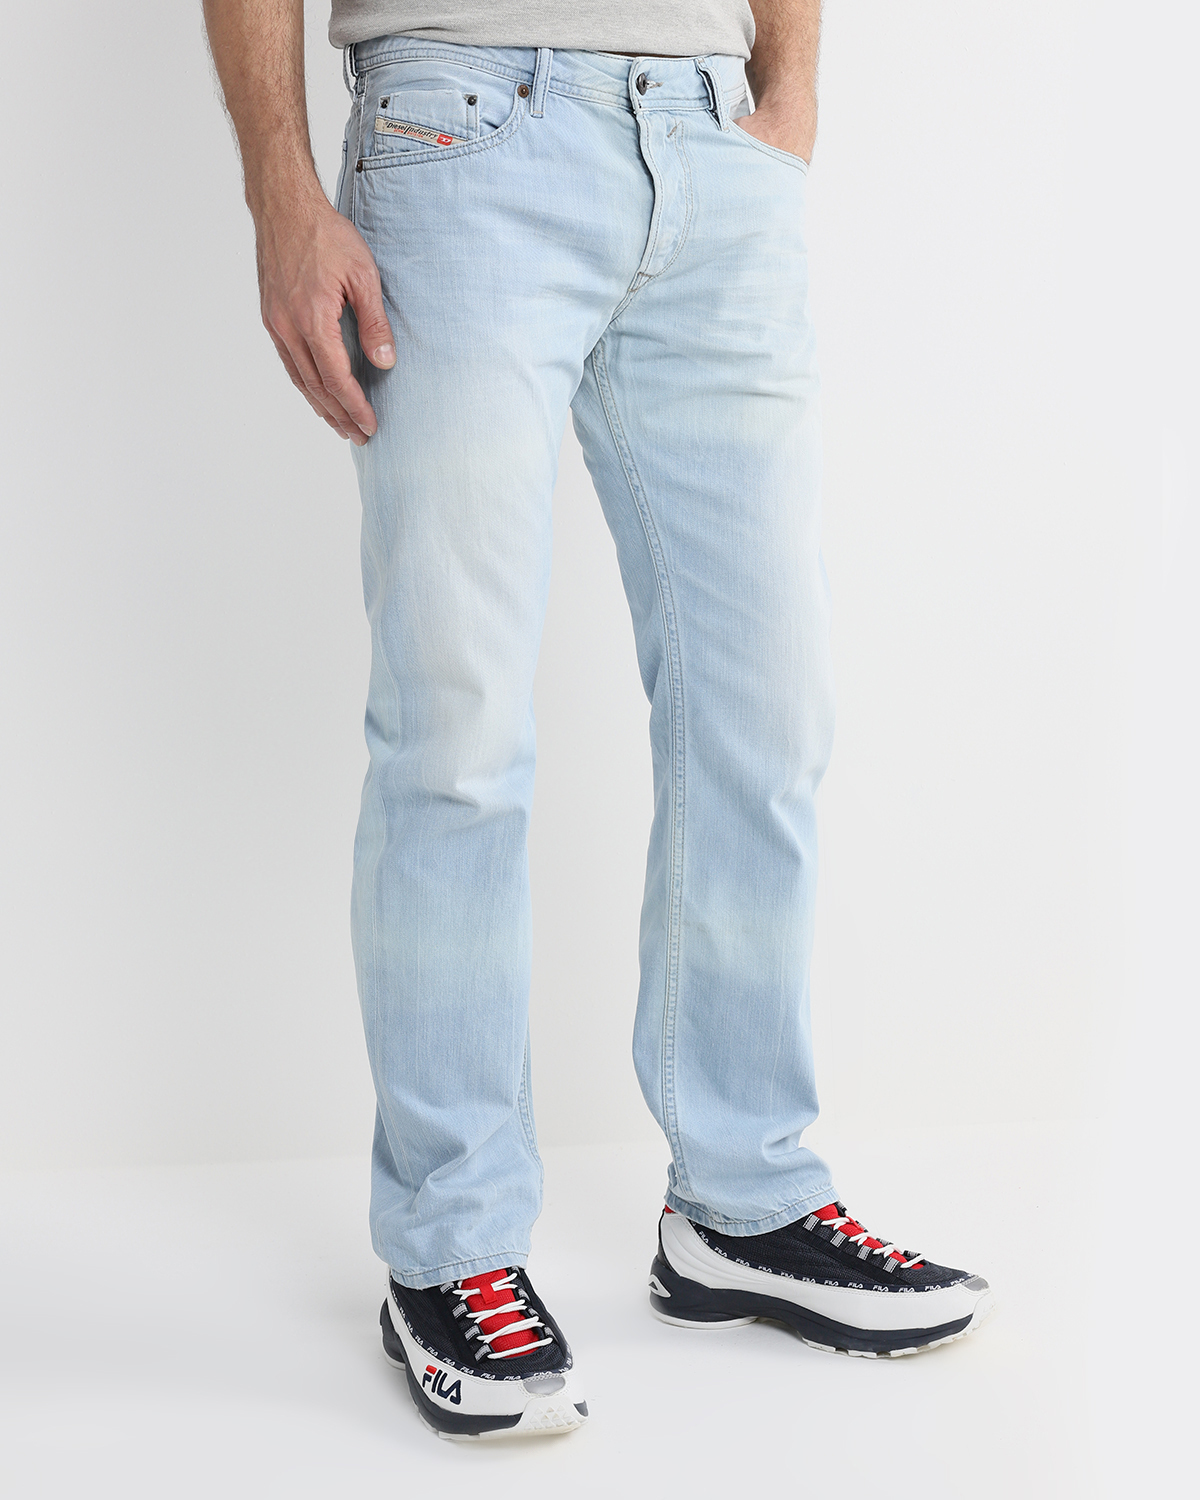 джинсы мужские diesel фото